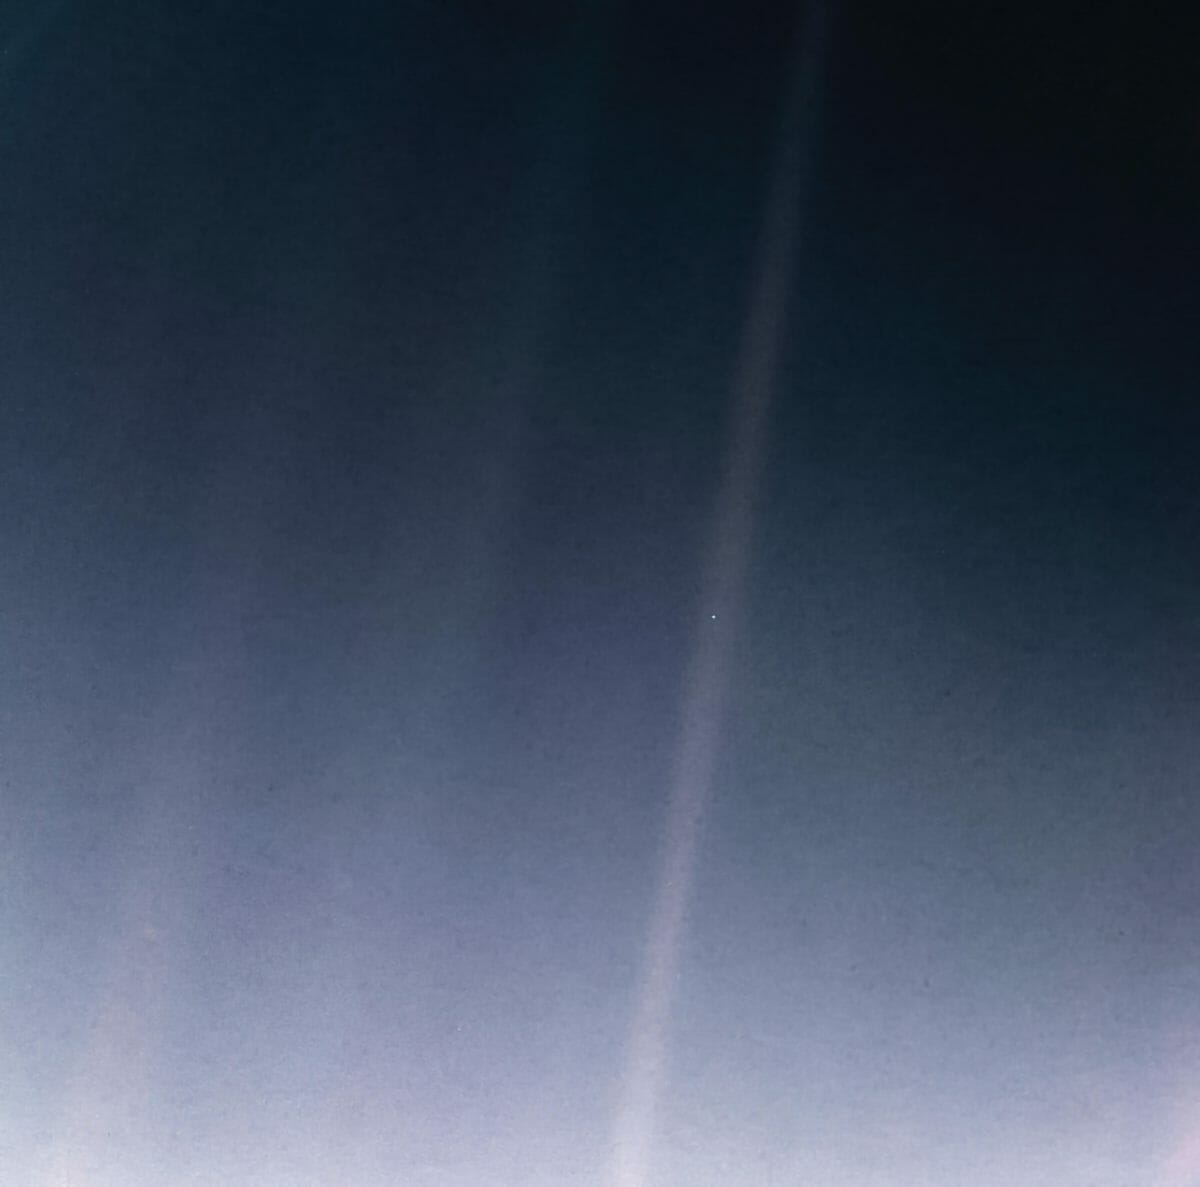 ボイジャー1号が撮影した「ペイル・ブルー・ドット」